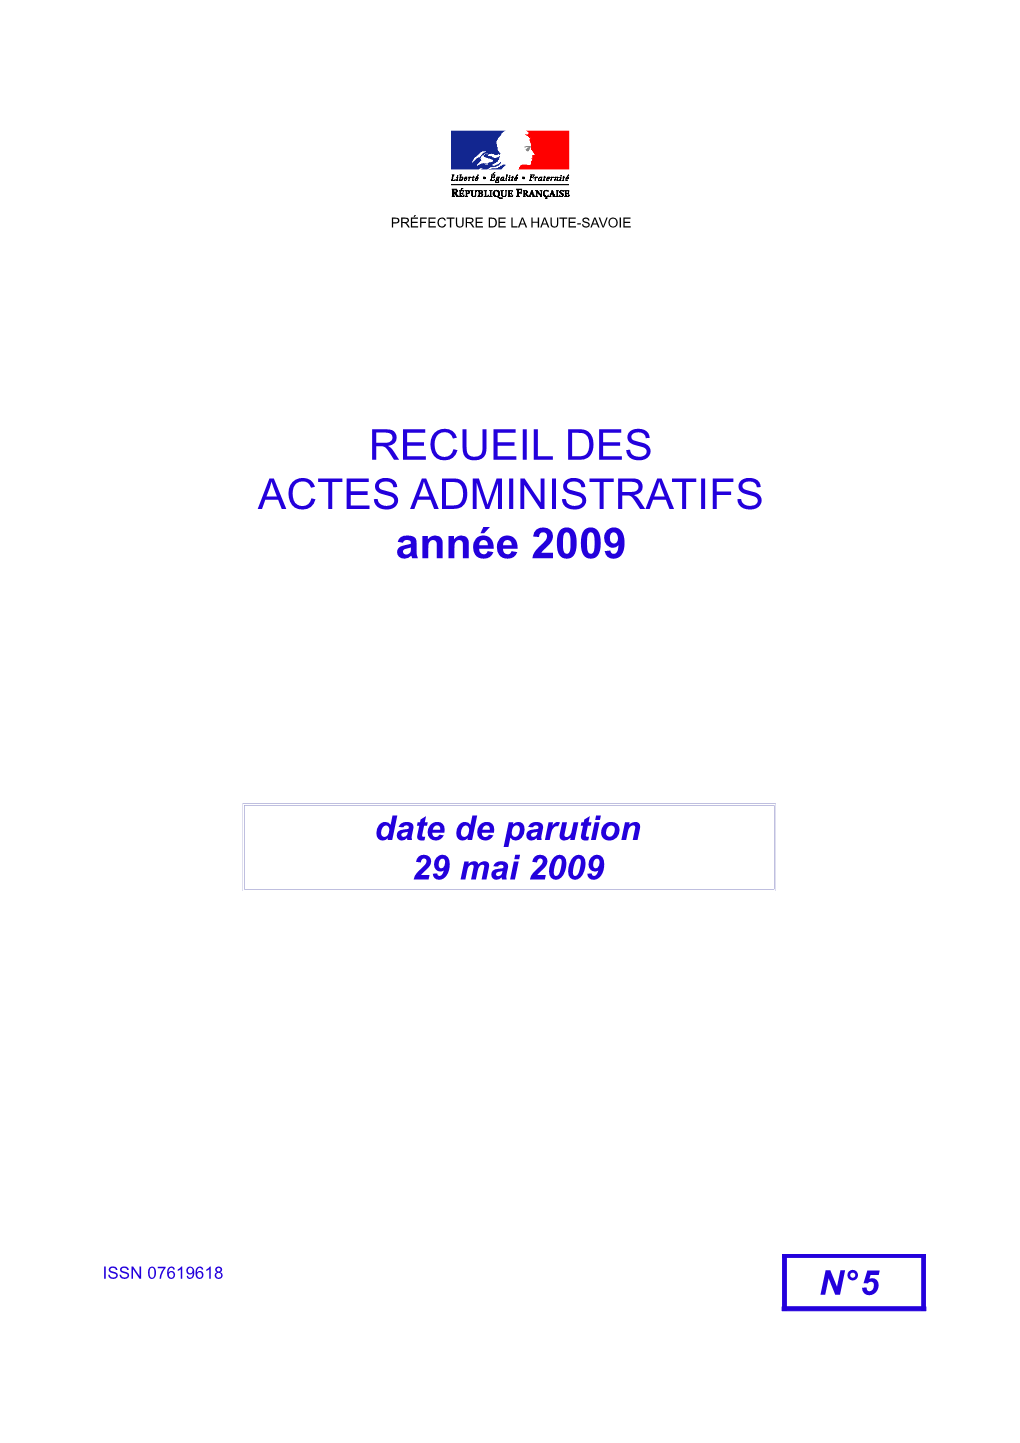 RECUEIL DES ACTES ADMINISTRATIFS Année 2009